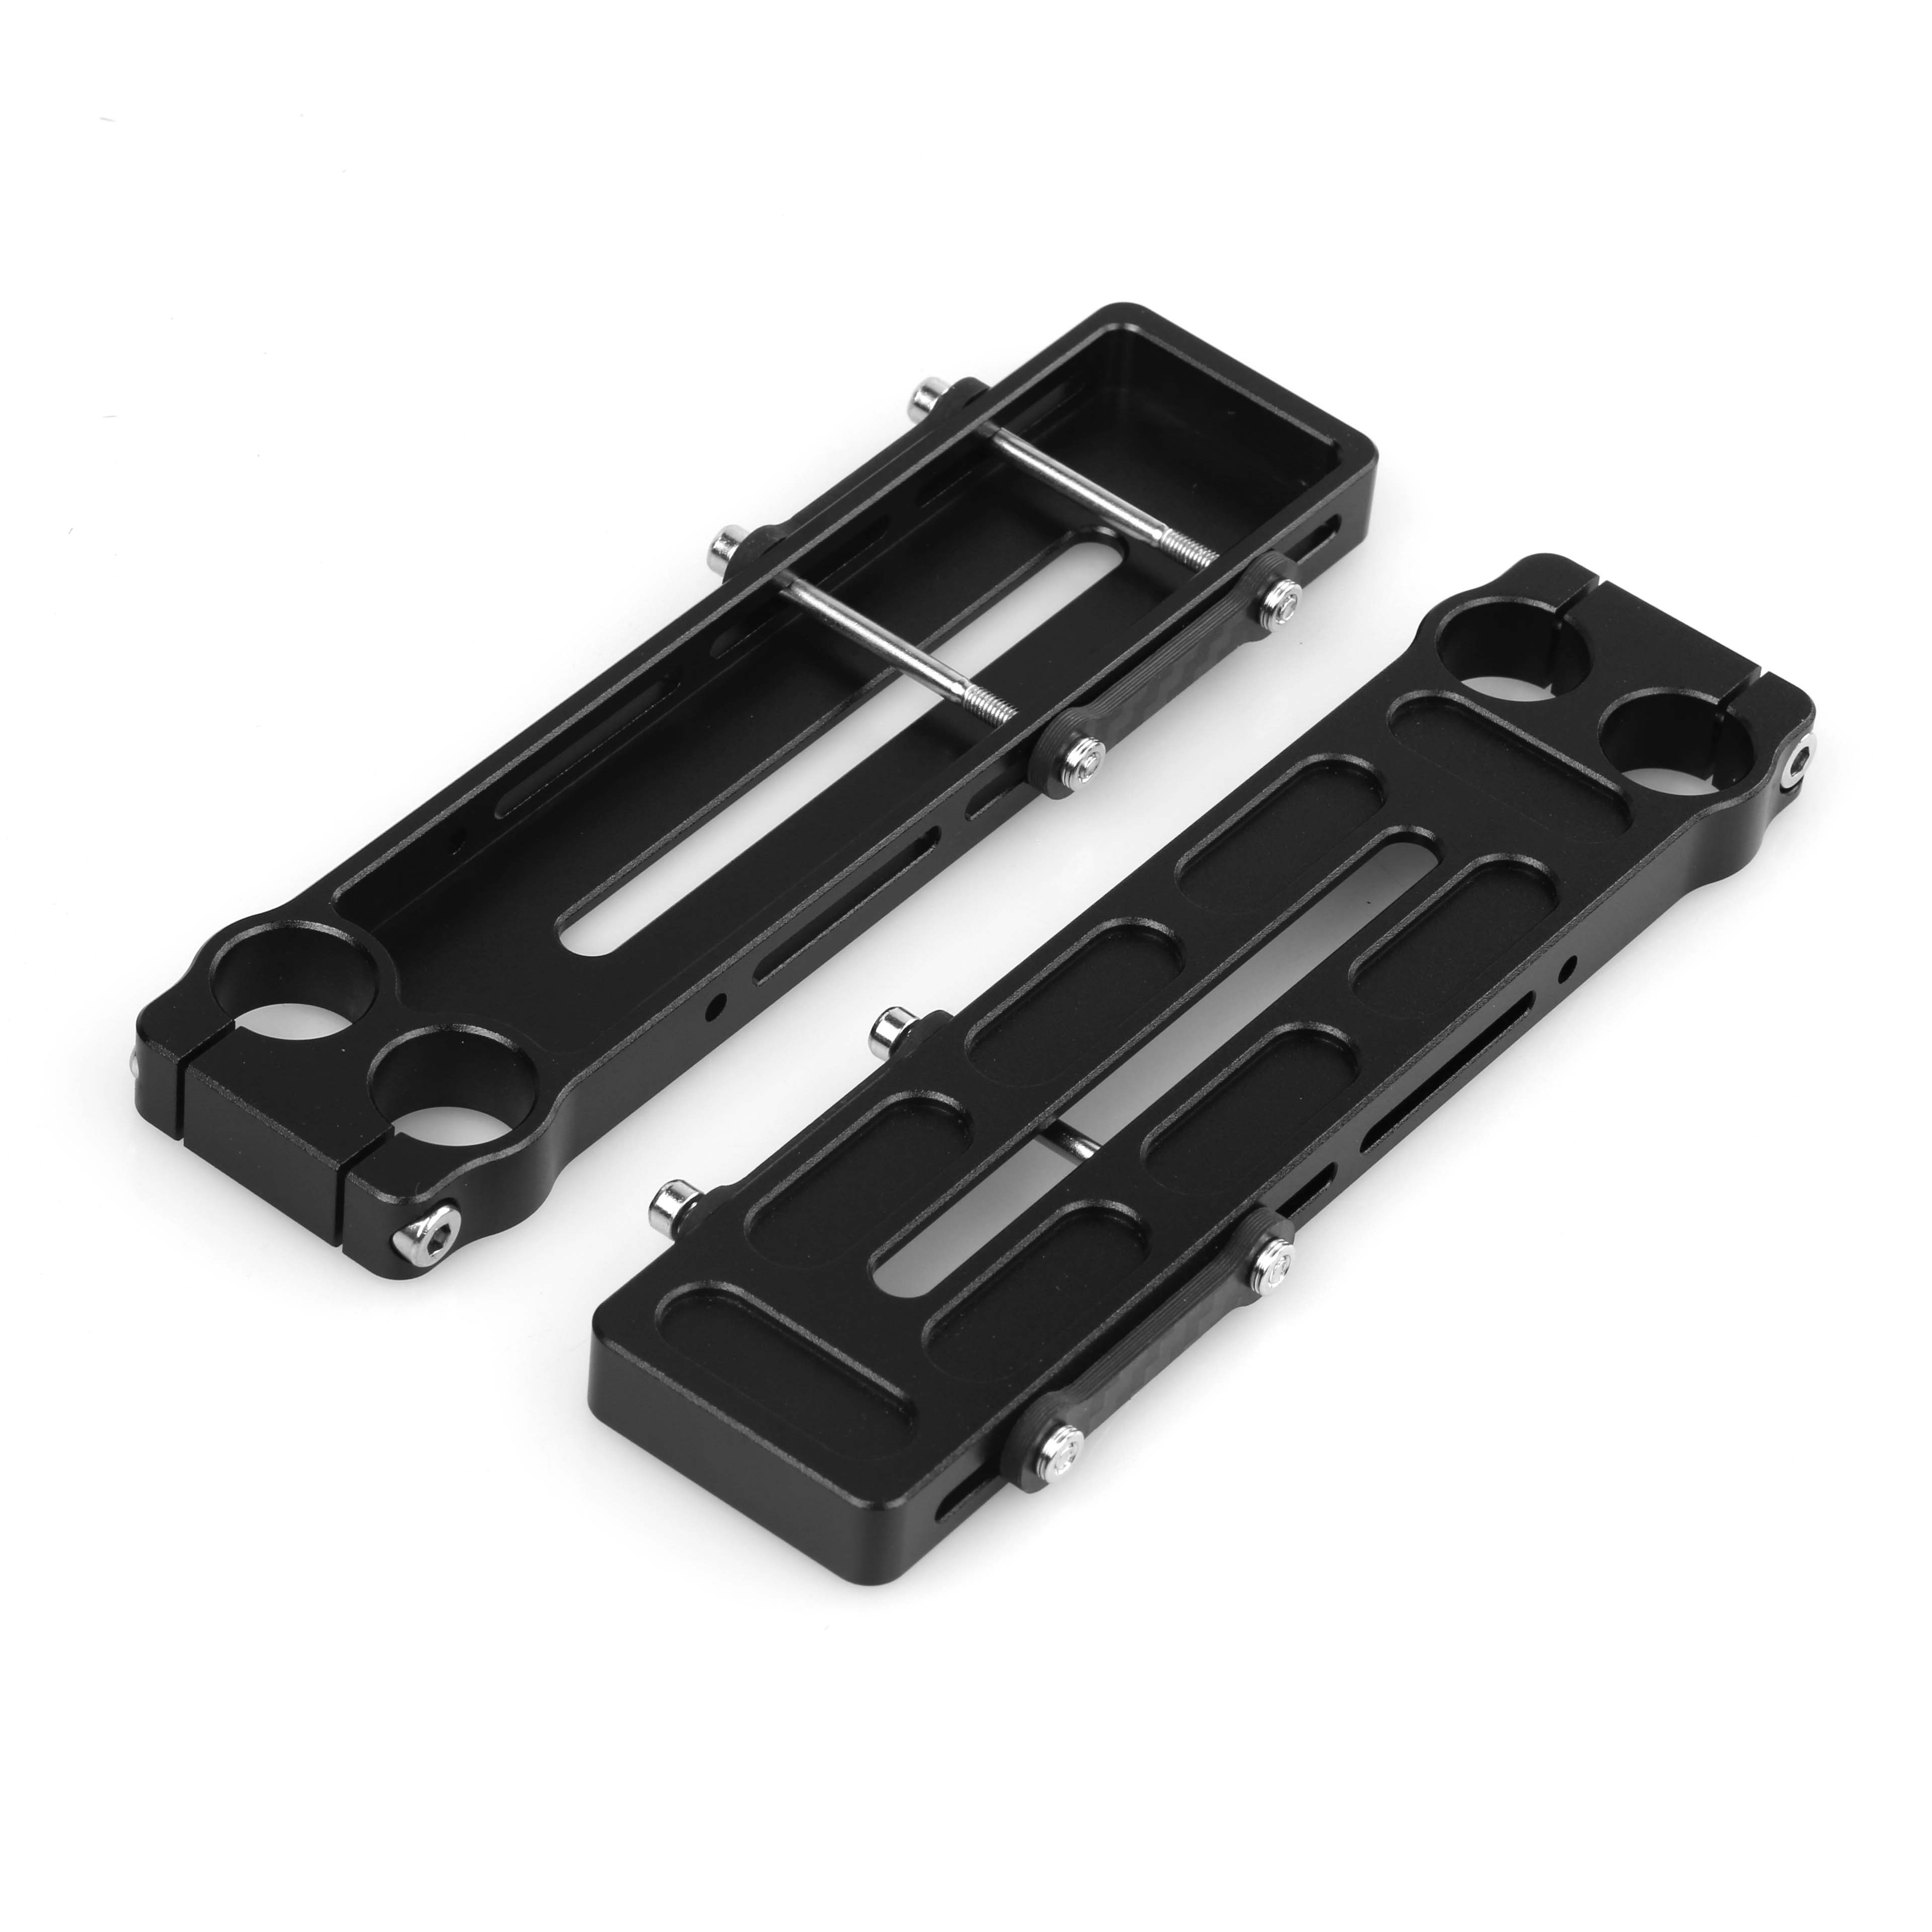 Aluminum part for camera tray tilt bar kit